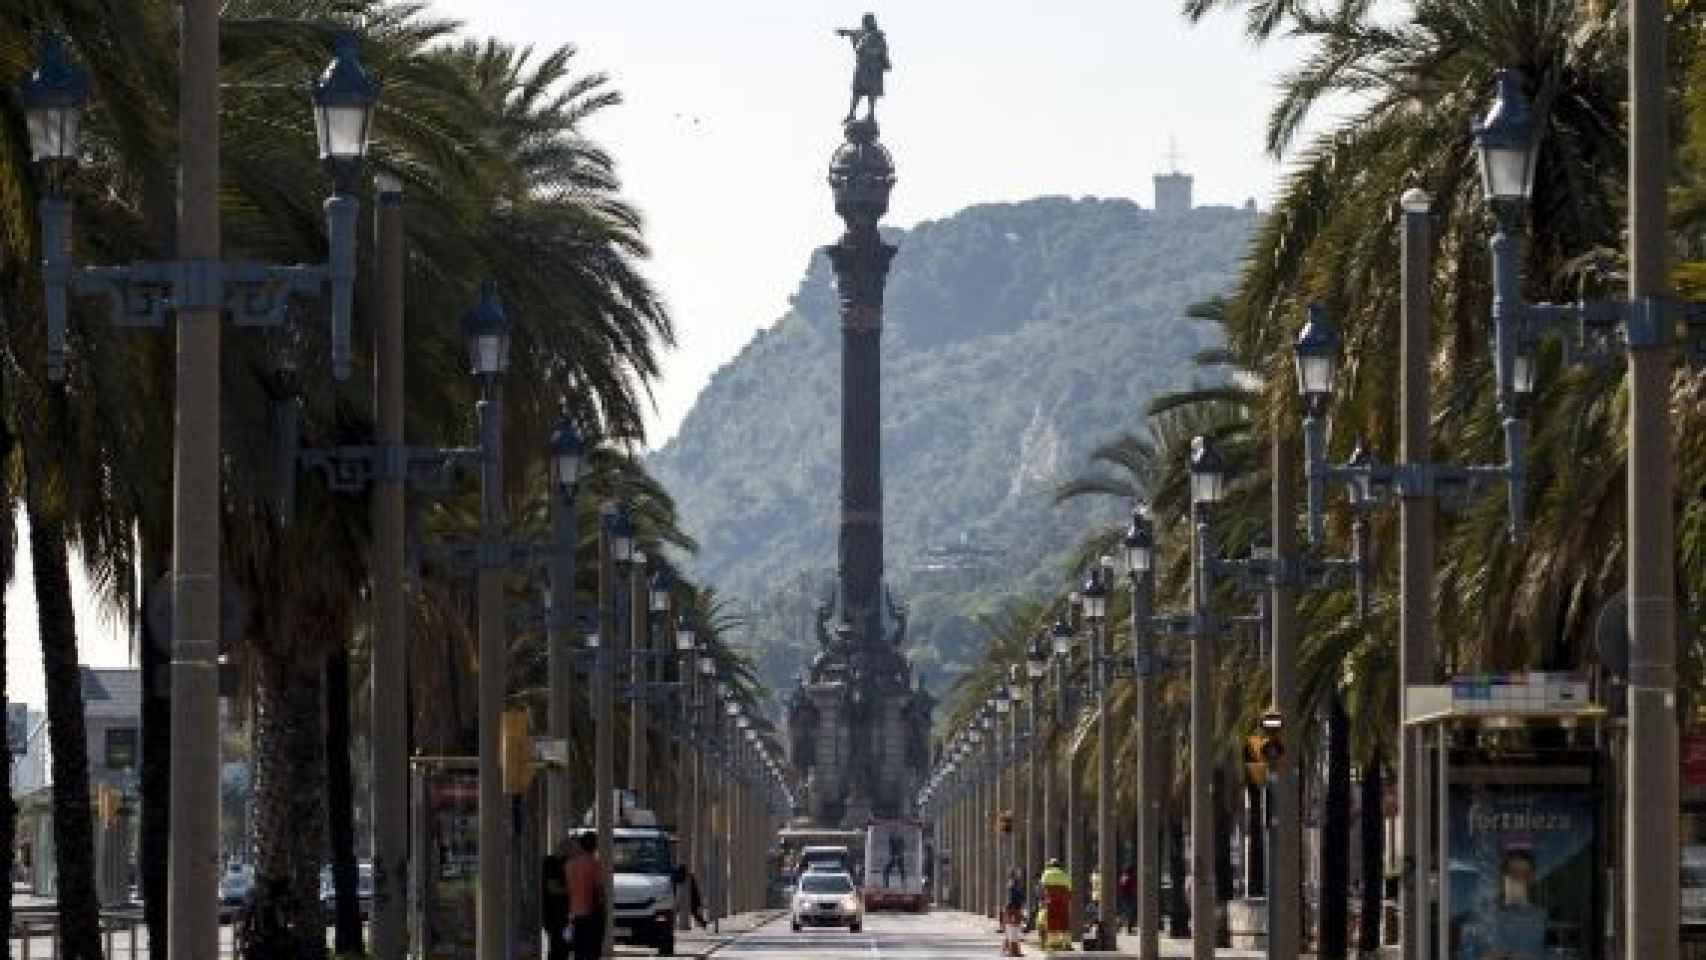 El monumento a Colón, al final del paseo, muy cerca de donde se encuentra la estatua de la gamba